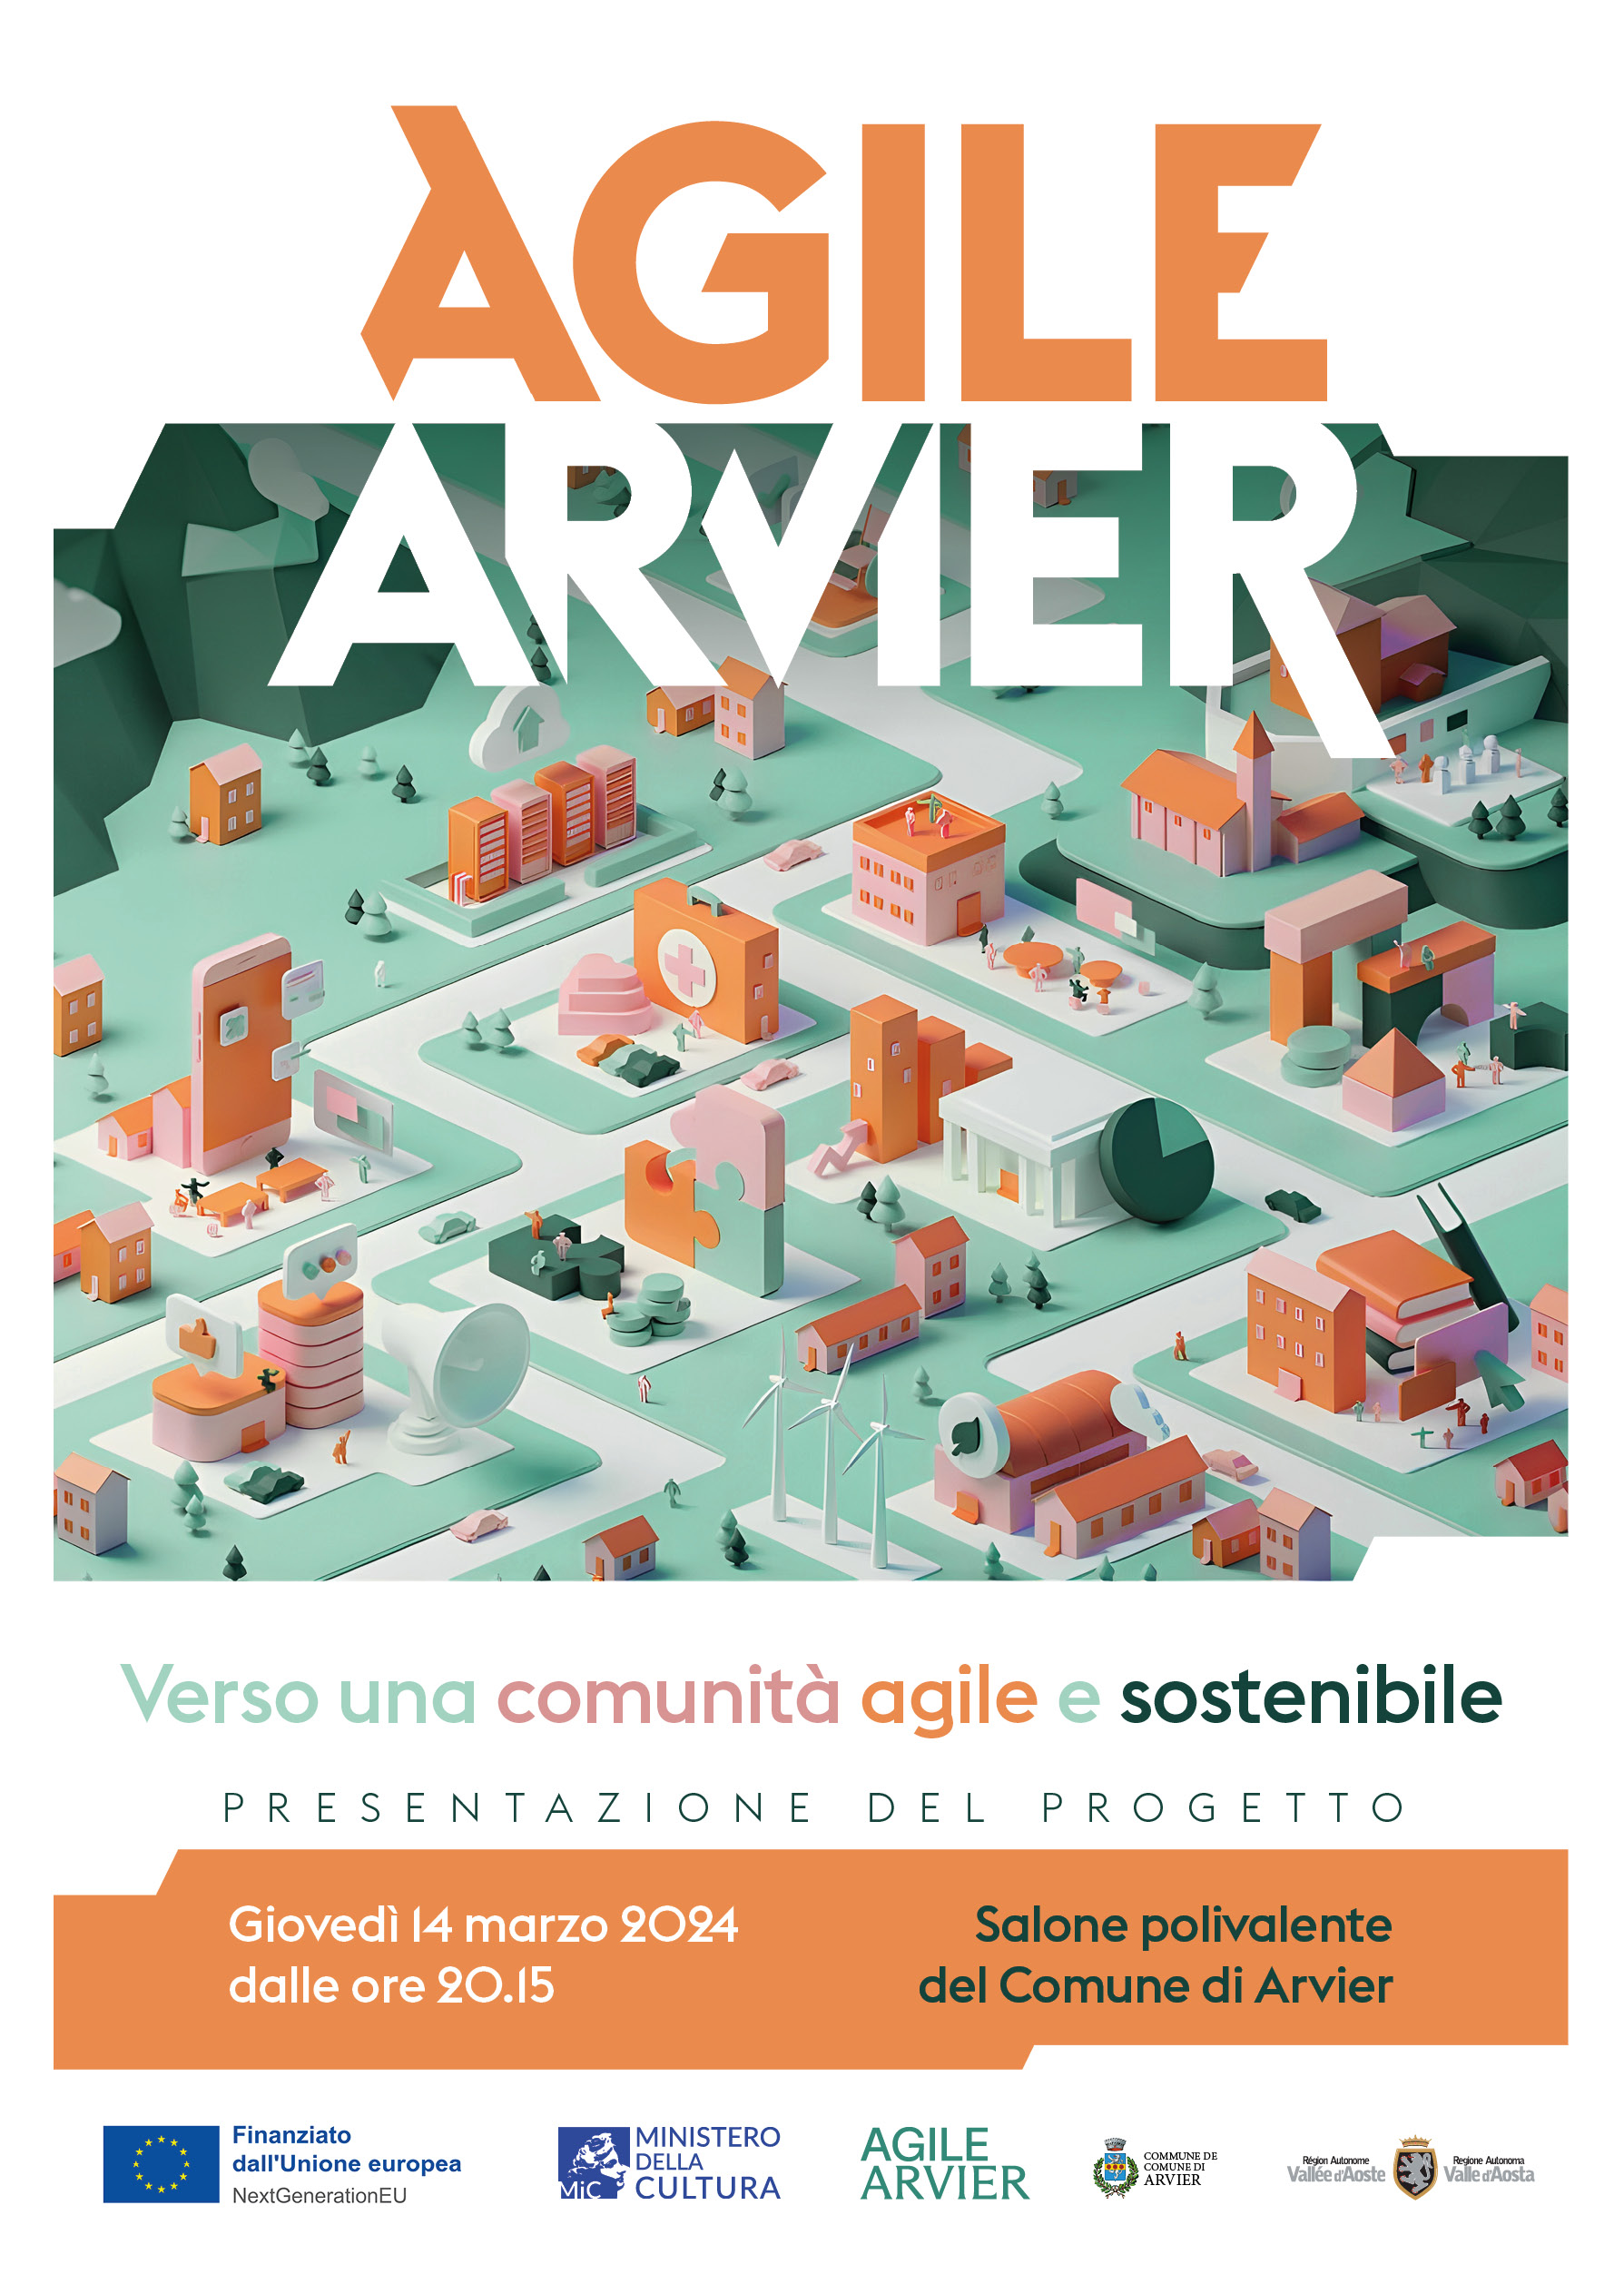 Arvier Agile: il Comune di Arvier investe sull’ambiente e sull’innovazione